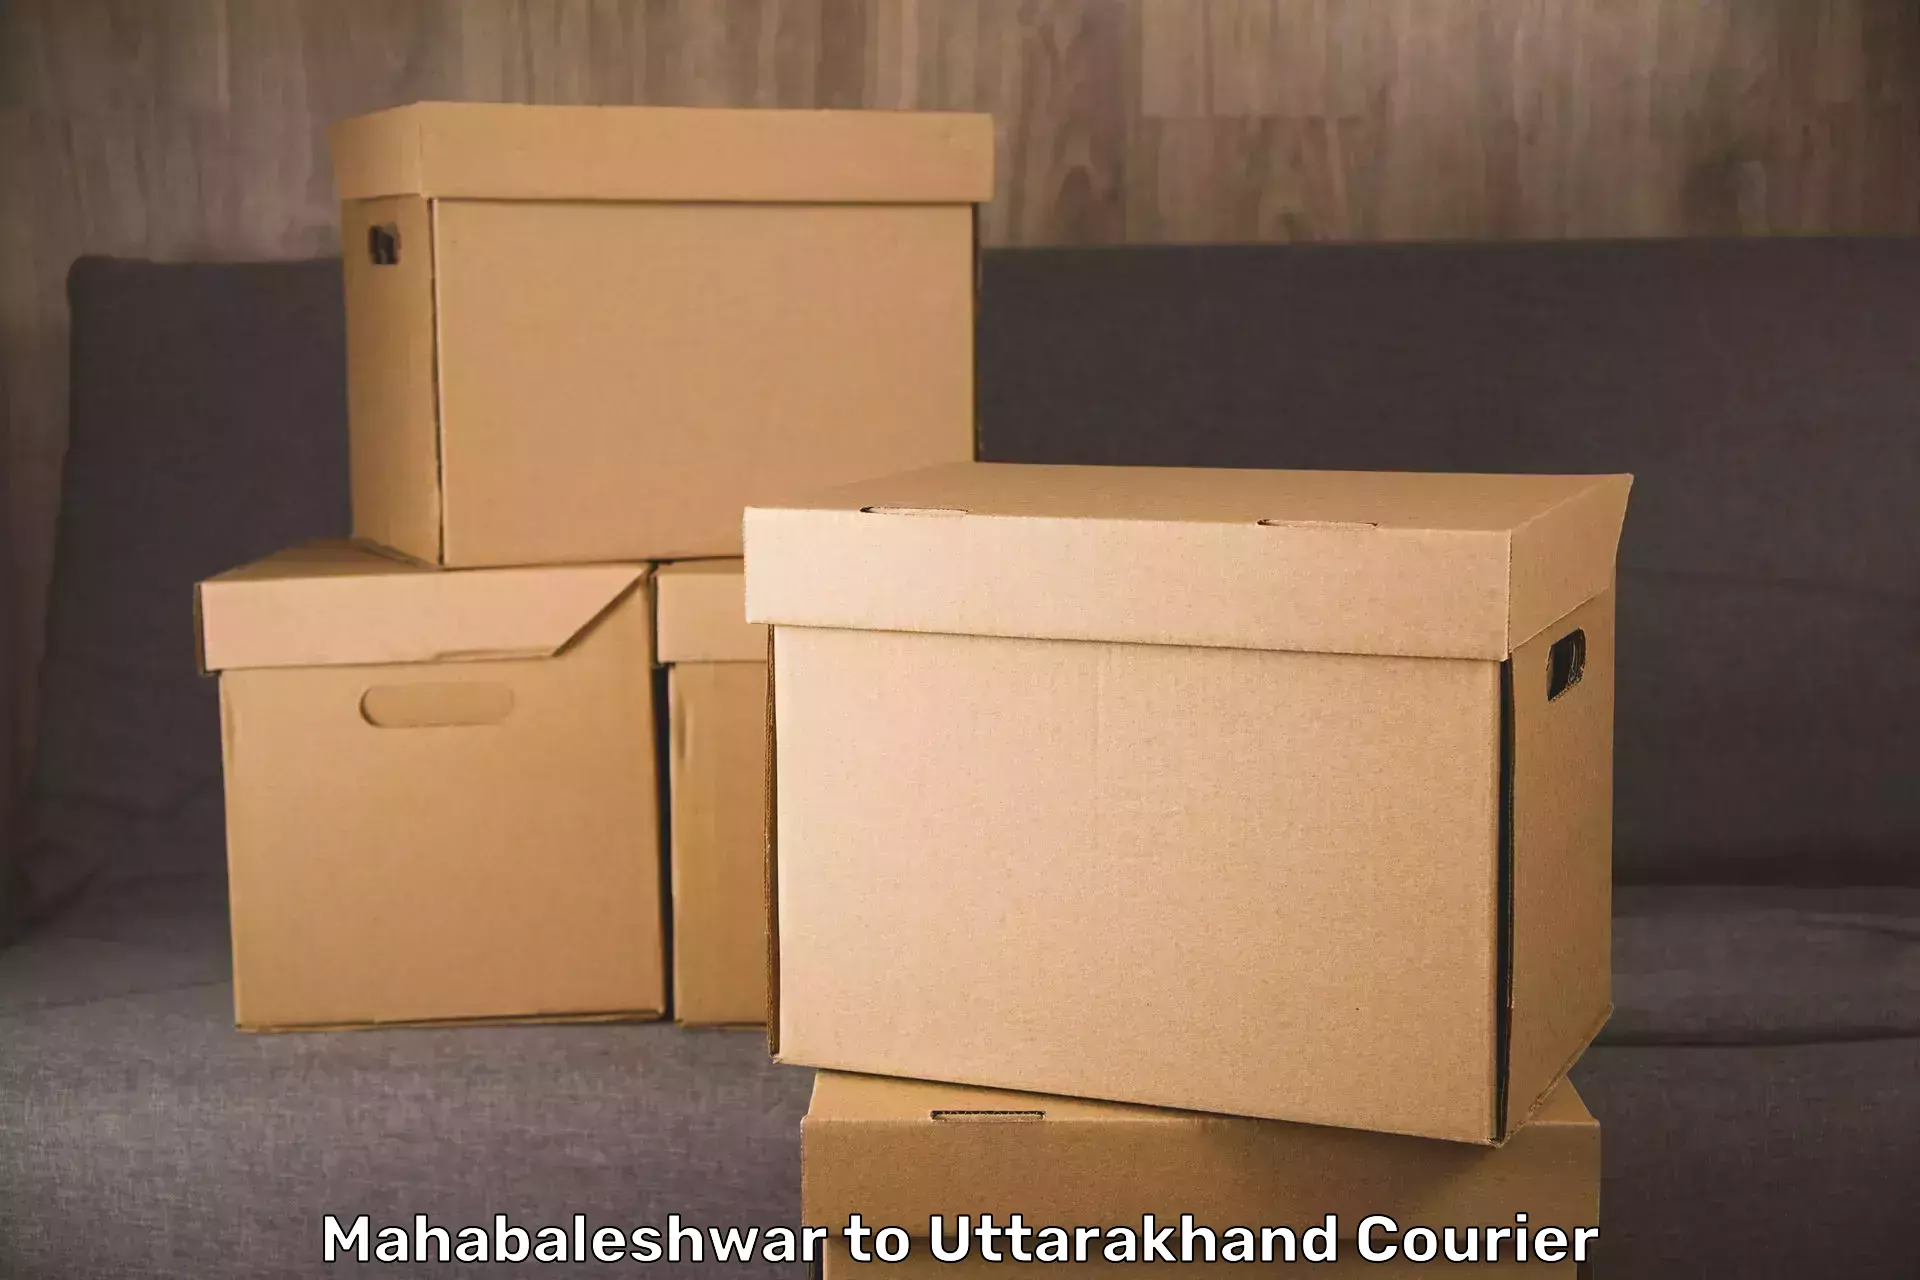 Luggage transport company Mahabaleshwar to Paithani